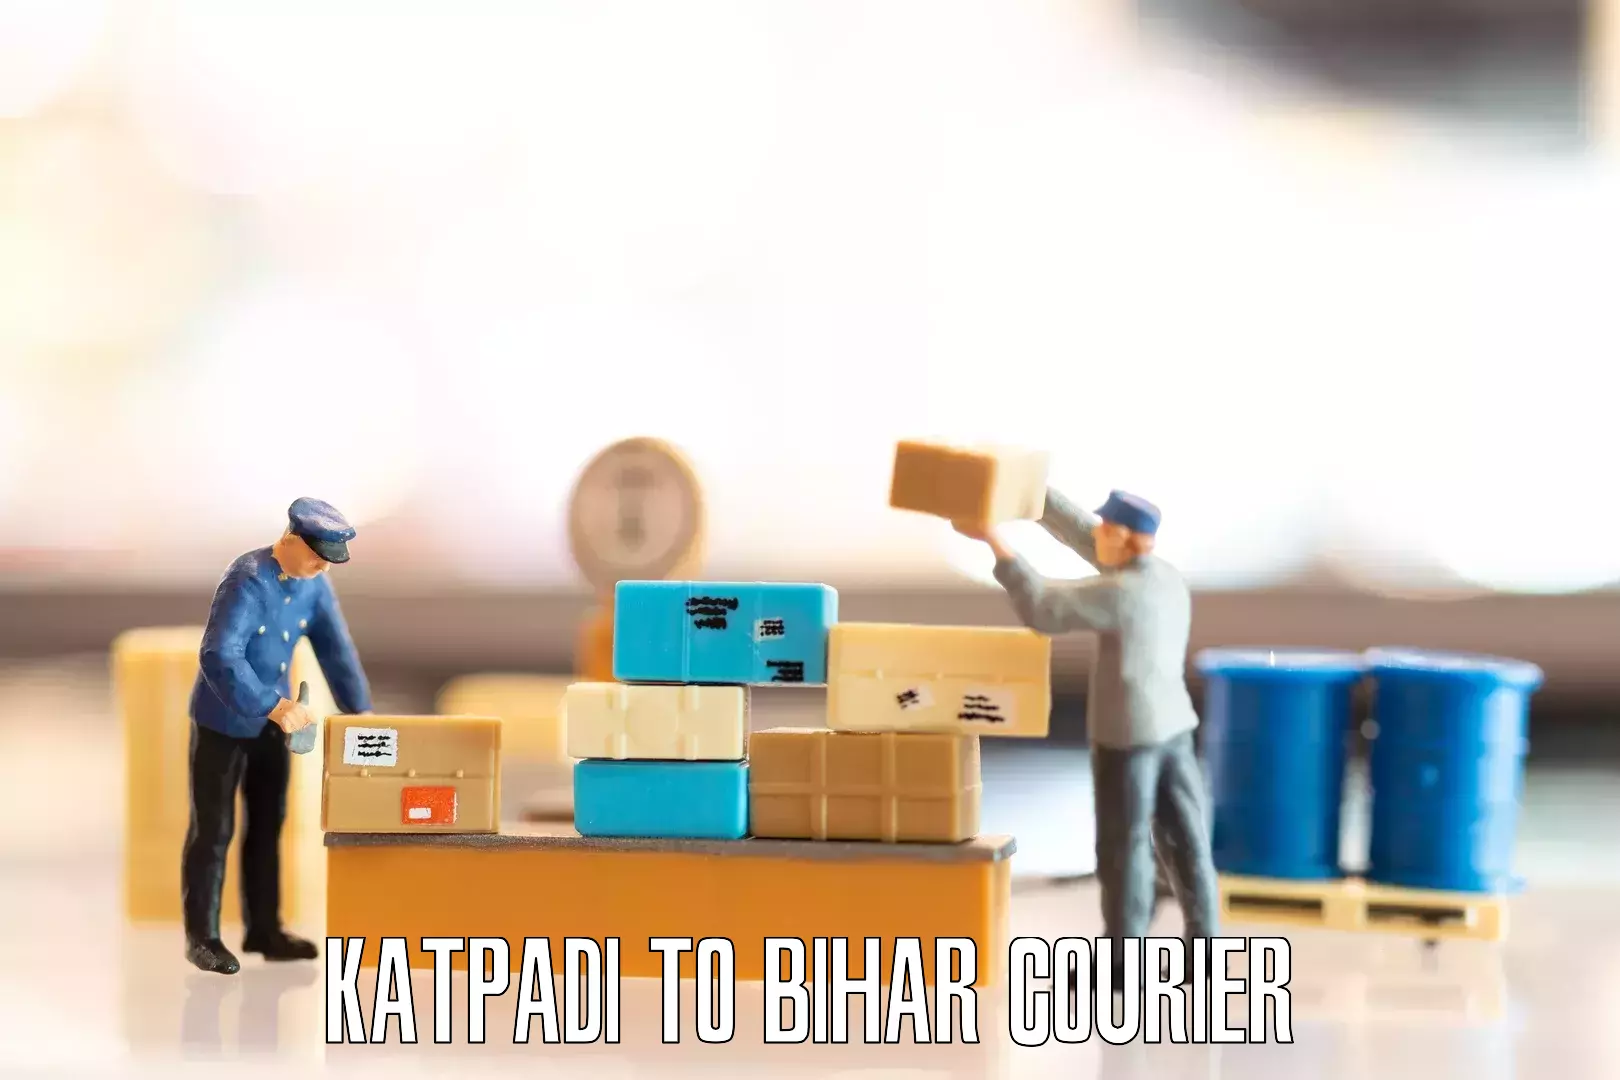 Furniture moving experts in Katpadi to Bihar